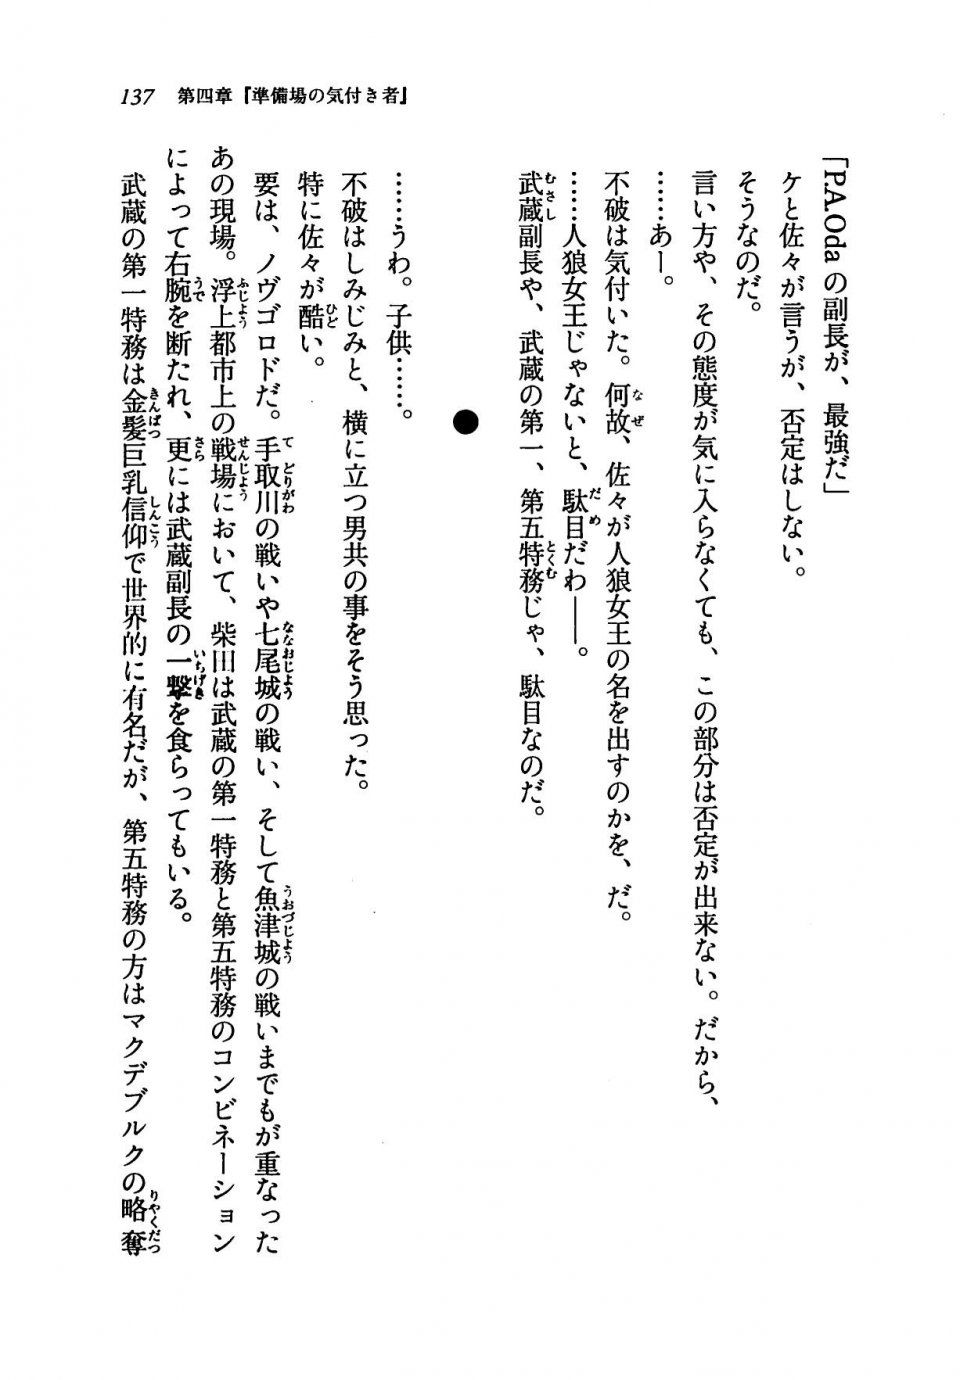 Kyoukai Senjou no Horizon LN Vol 19(8A) - Photo #137